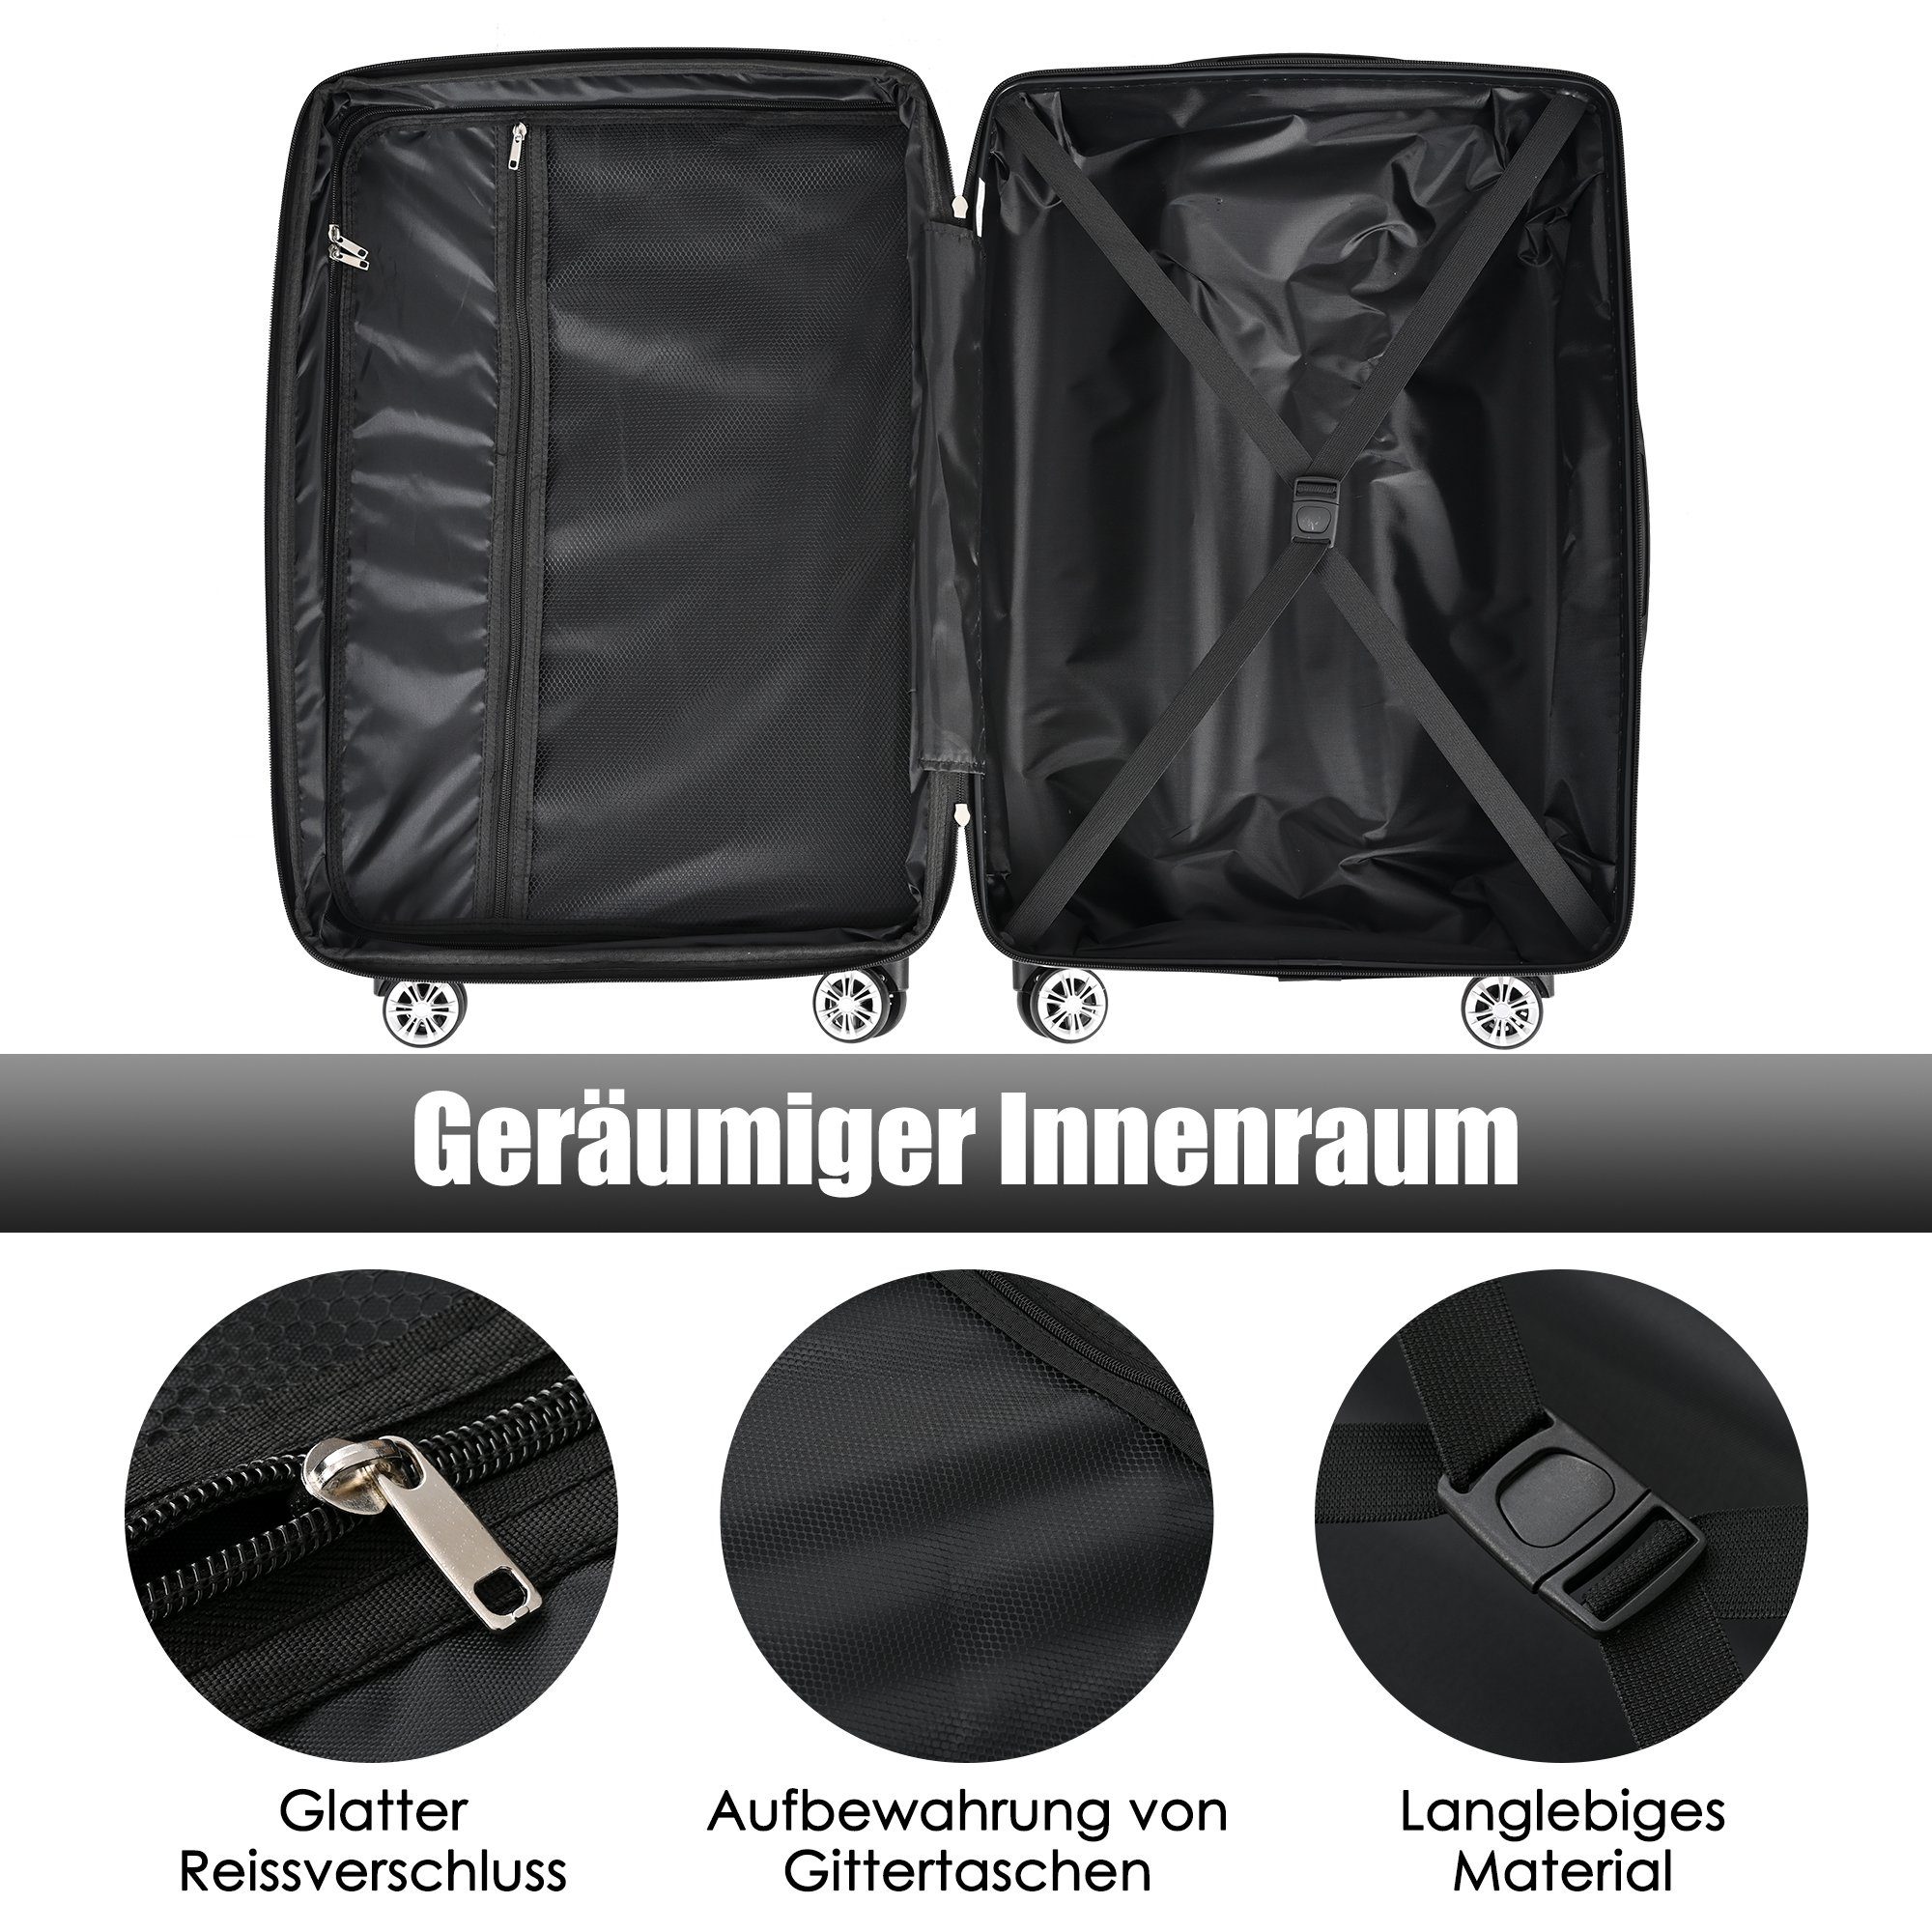 Zollschloss, 4 Rollen, schwarz ABS-Material, EXTSUD Handgepäck Rollkoffer, Handgepäckkoffer 56.5*37.5*22.5 Reisekoffer, TSA Hartschalen-Koffer,